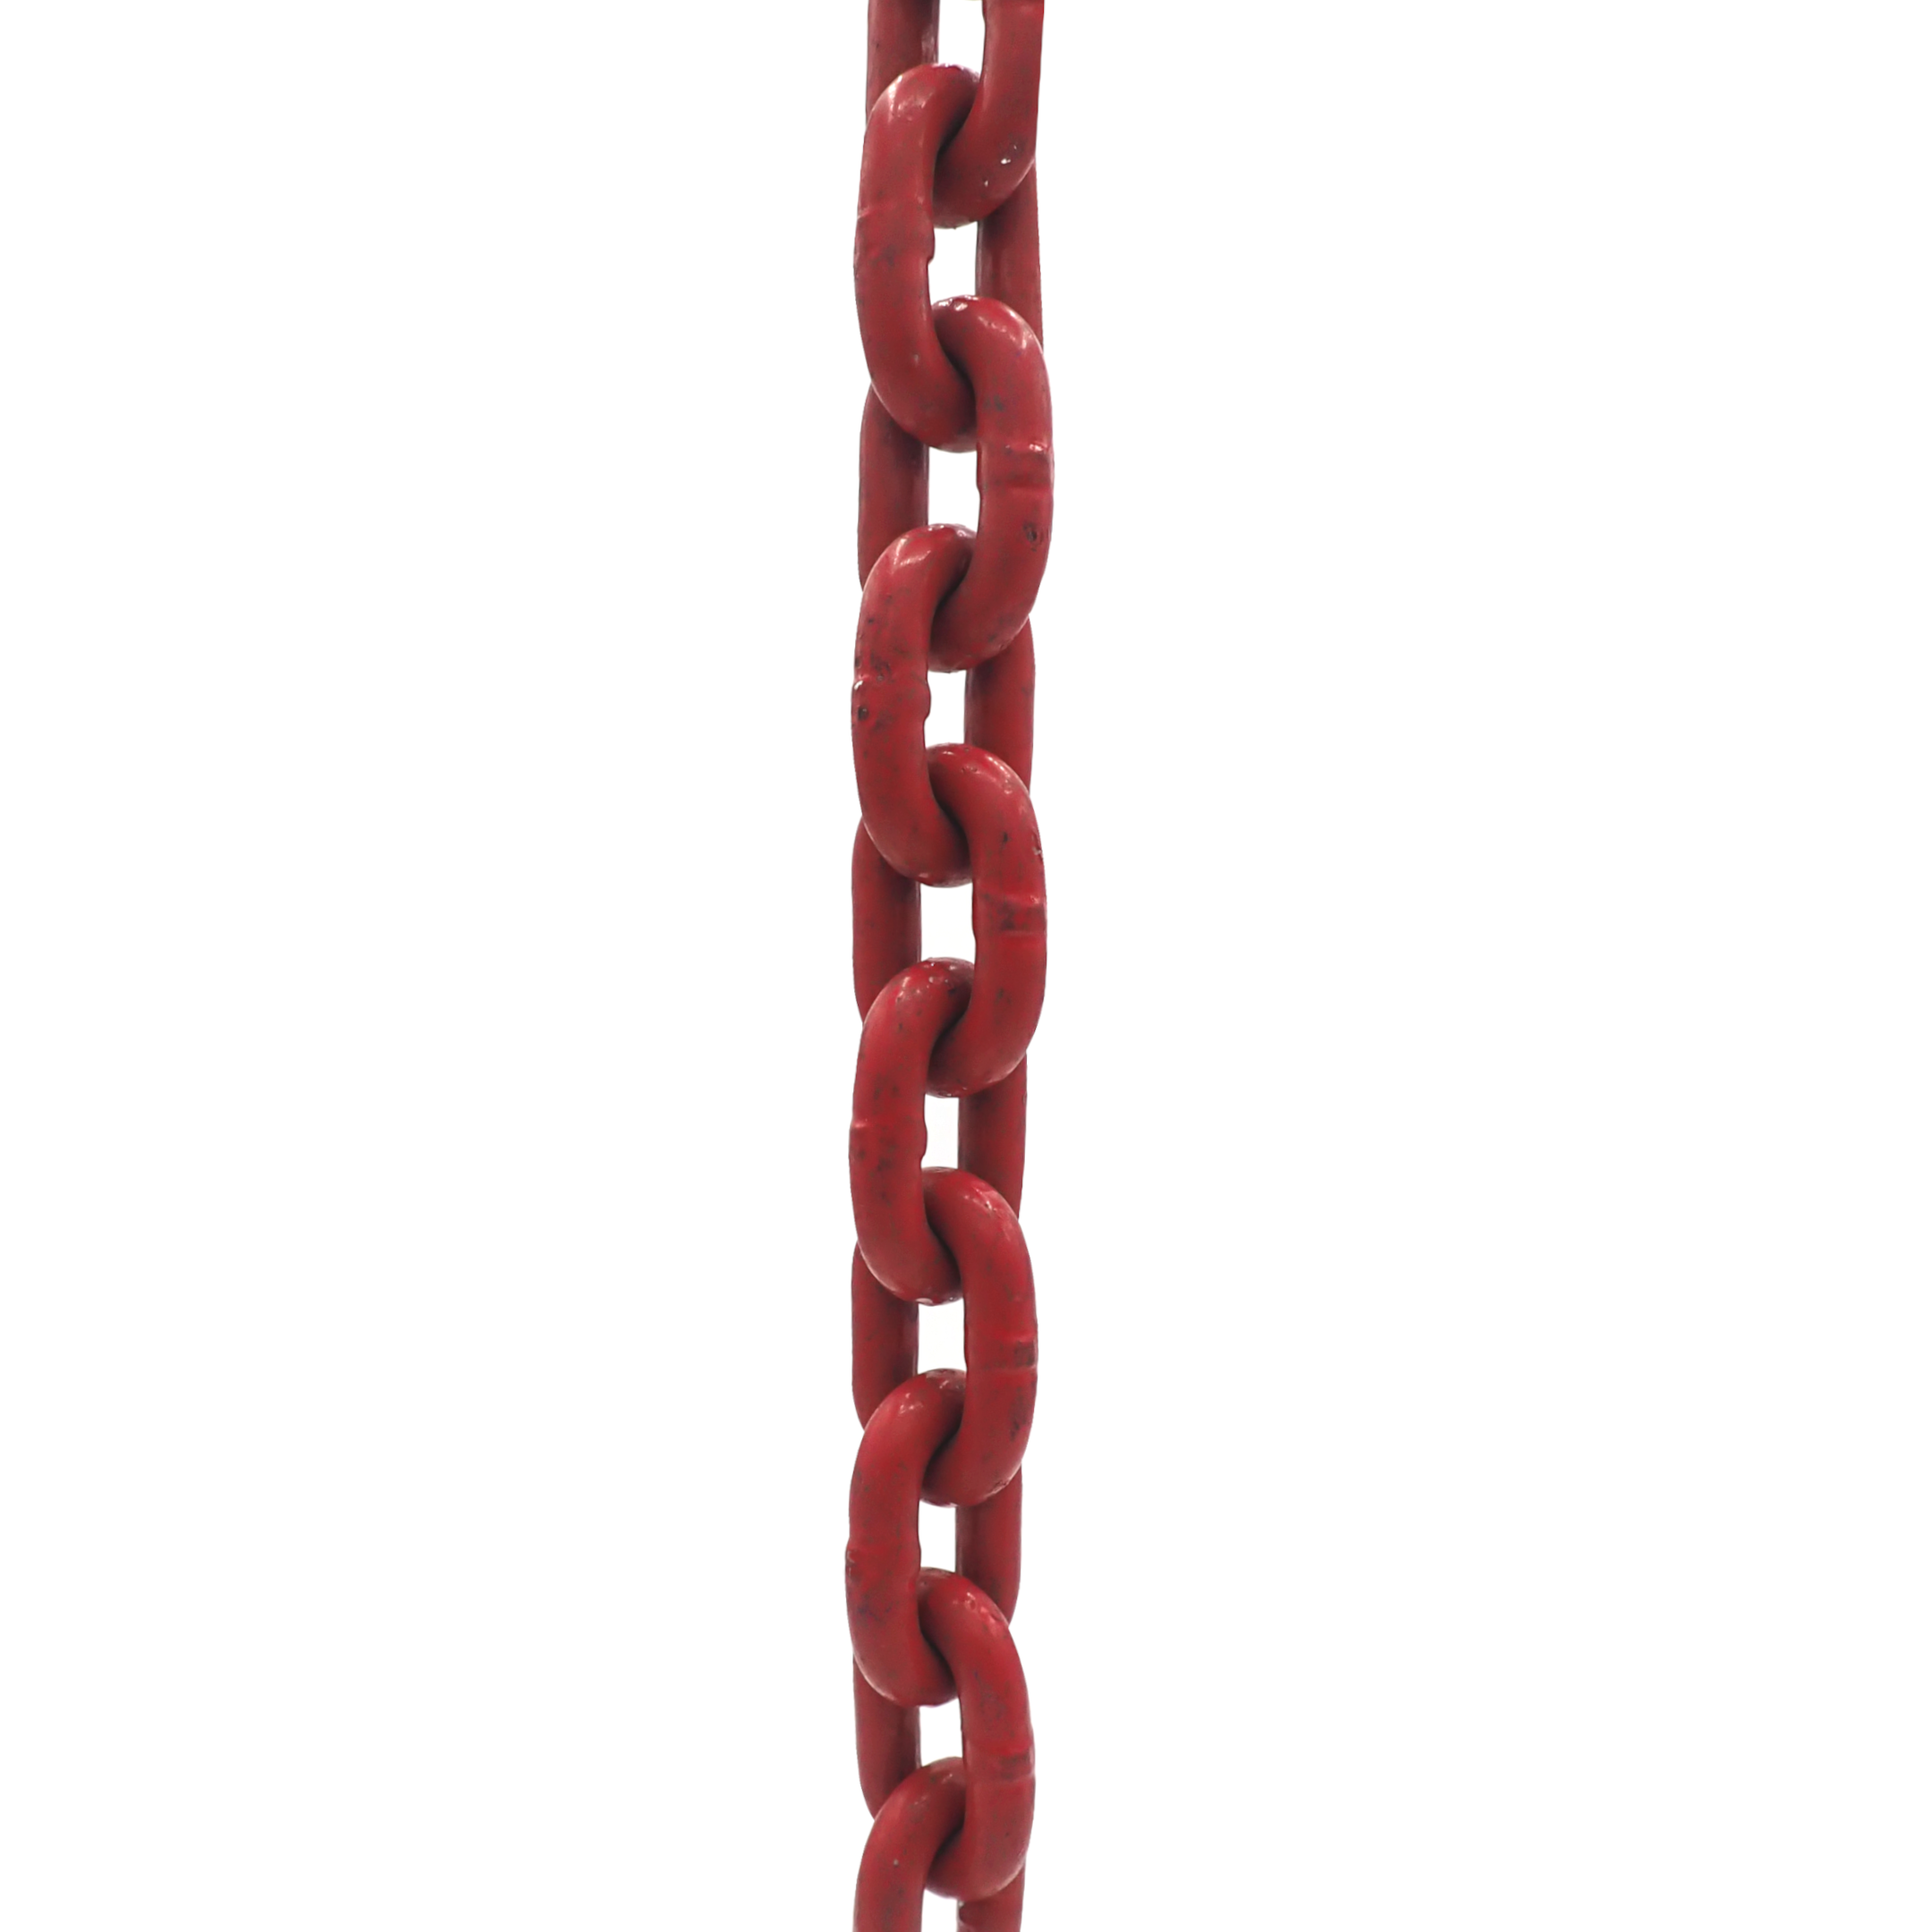 Rundstahlkette GK 10 rotbraun lackiert mit H-Stempel